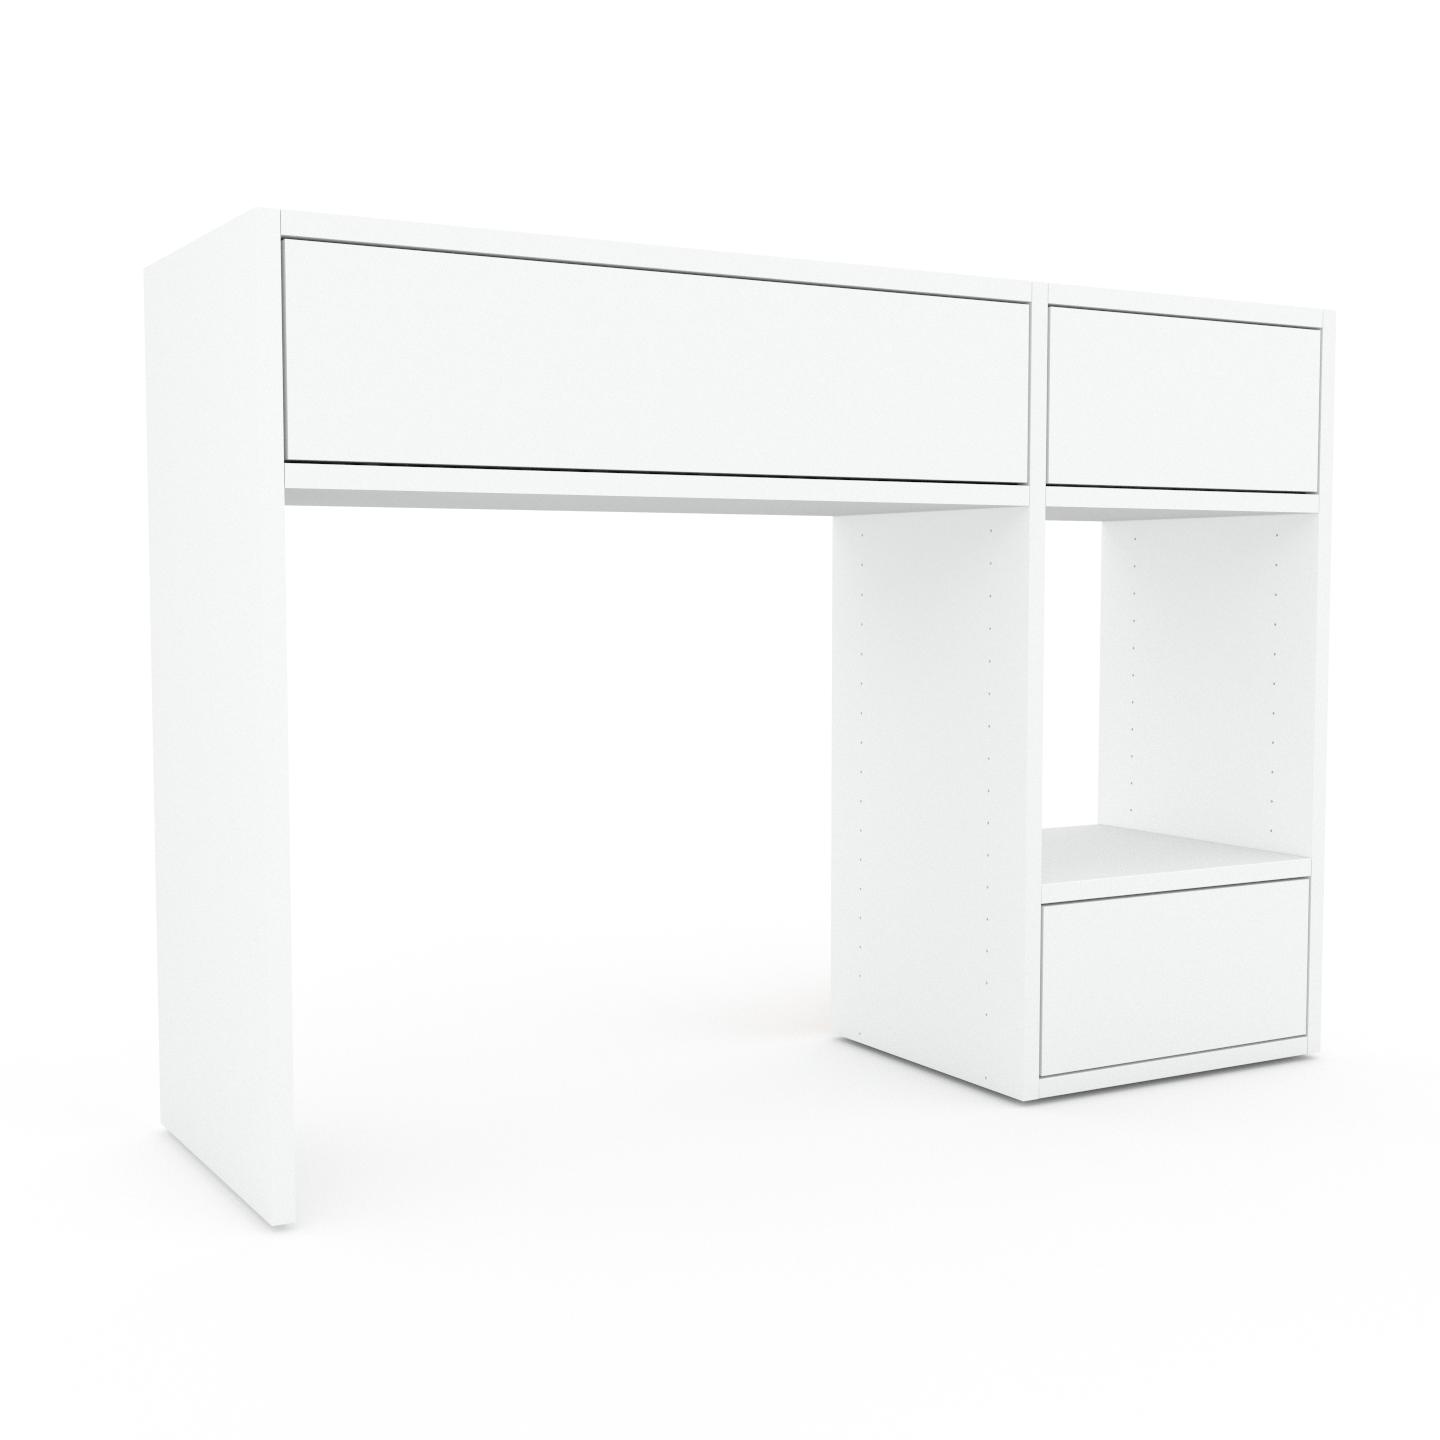 MYCS Konsolentisch Weiß - Eleganter Konsolentisch: Beste Qualität, einzigartiges Design - 116 x 80 x 35 cm, konfigurierbar